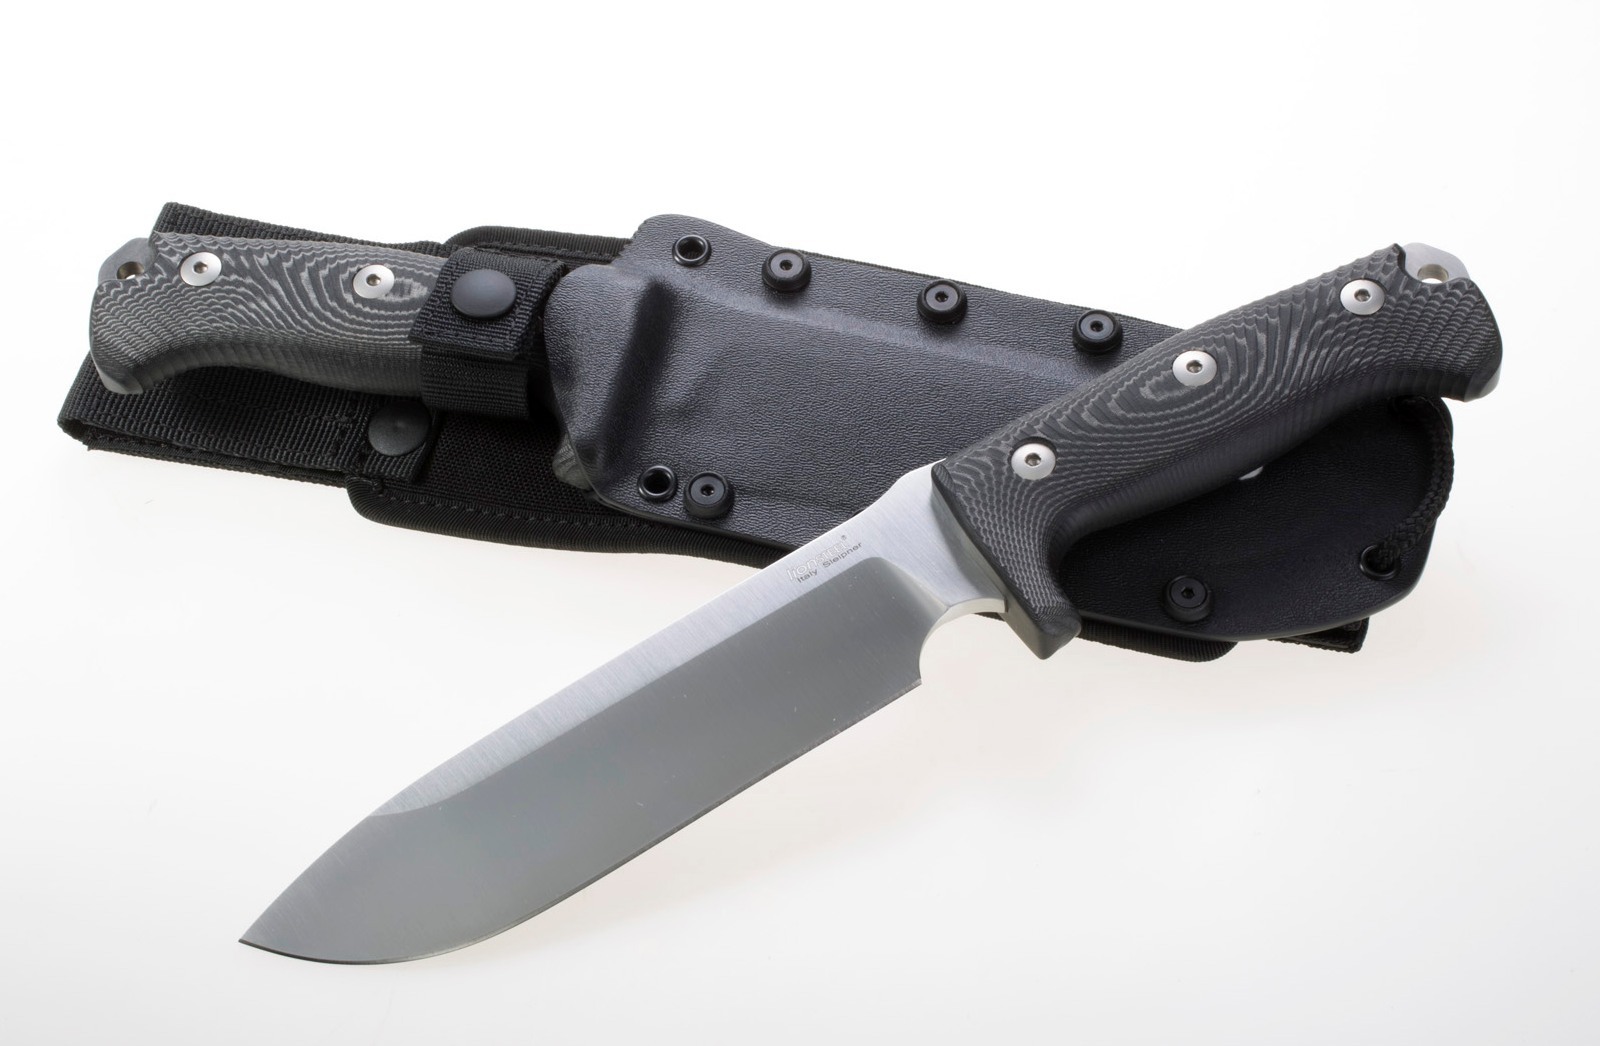 Нож с фиксированным клинком LionSteel M7 MS, сталь Sleipner, рукоять Black micarta нож с фиксированным клинком ontario rd4 micarta серрейтор